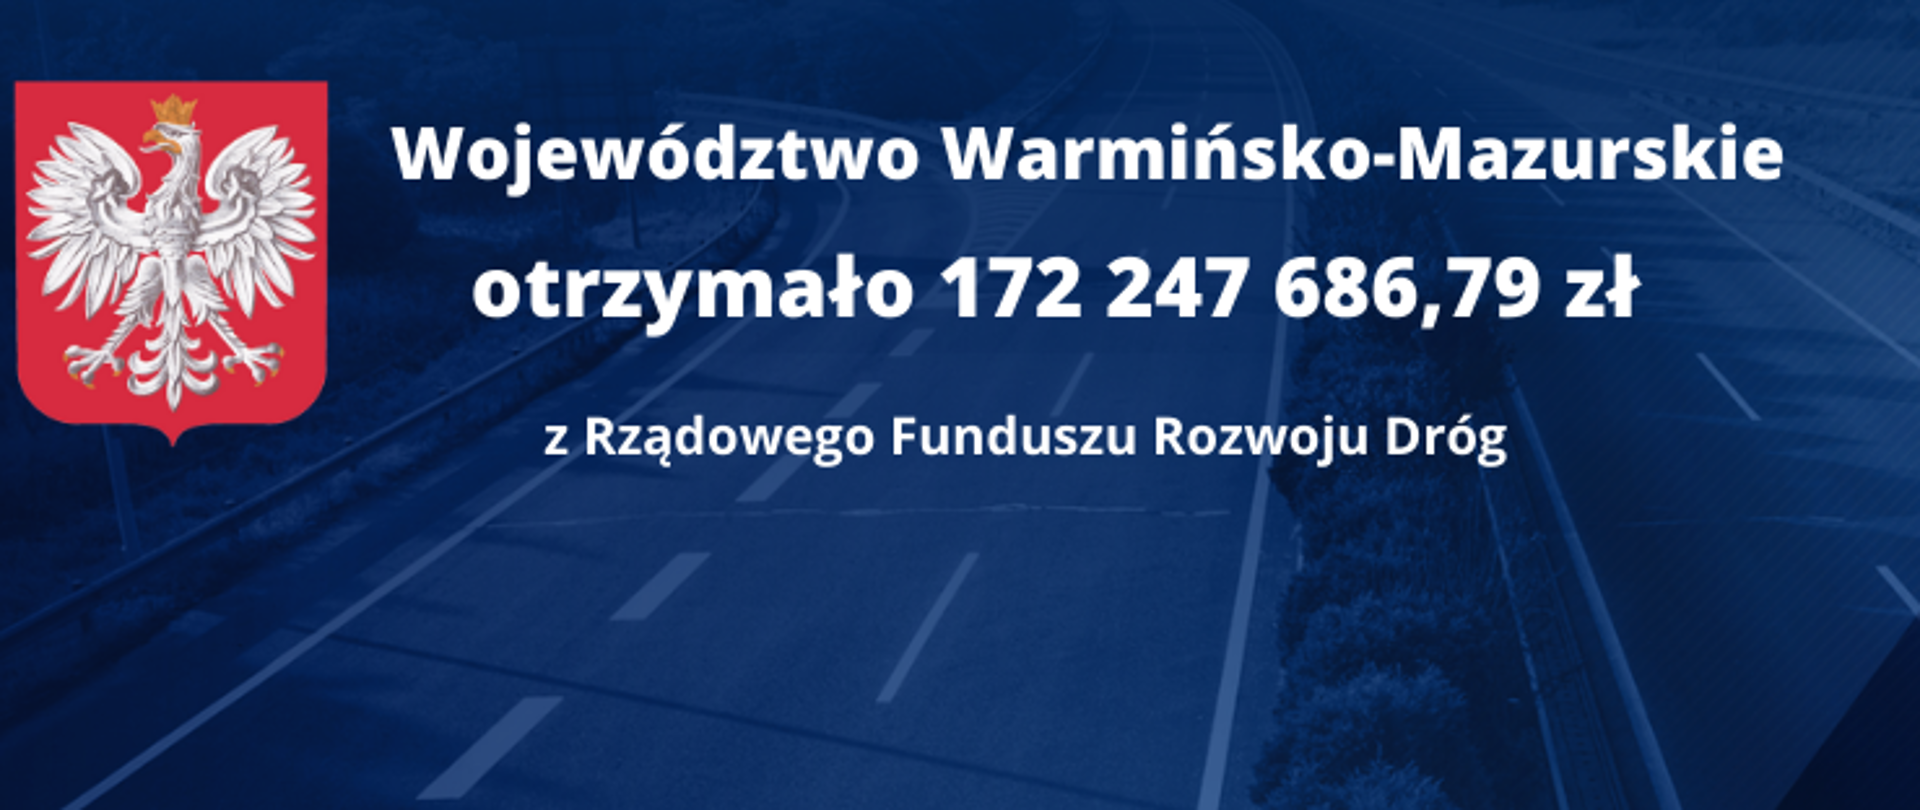 Województwo warmińsko-mazurskie otrzymało 172 247 686,79 zł na remont i budowę nowych dróg w roku 2022 w ramach Rządowego Funduszu Rozwoju Dróg